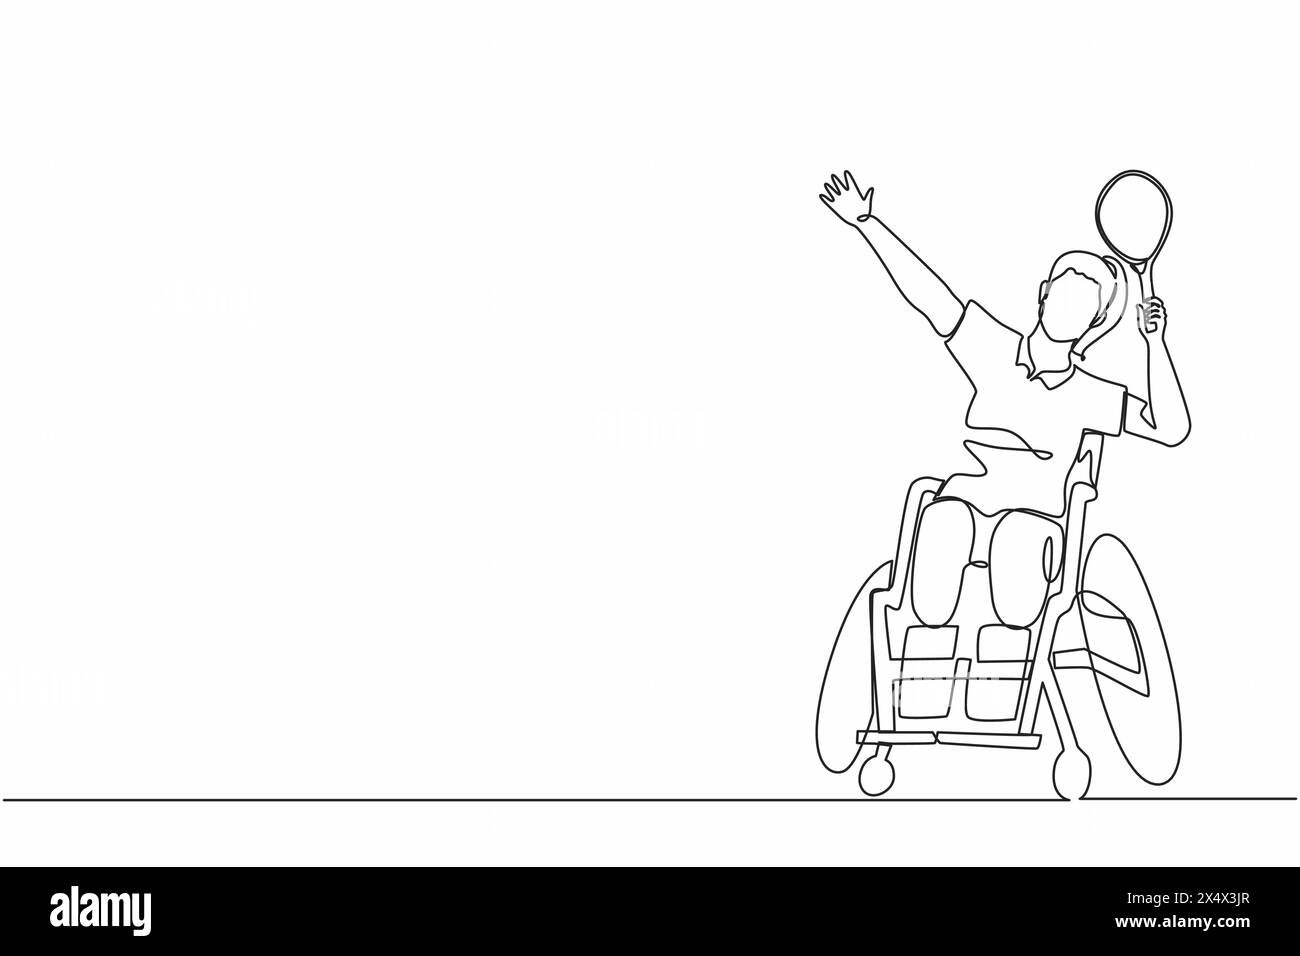 Joueur de badminton dessinant une seule ligne assis sur un fauteuil roulant avec une posture smash. Les femmes sportives handicapées portent un uniforme, amputée femme sport compétition. C Illustration de Vecteur